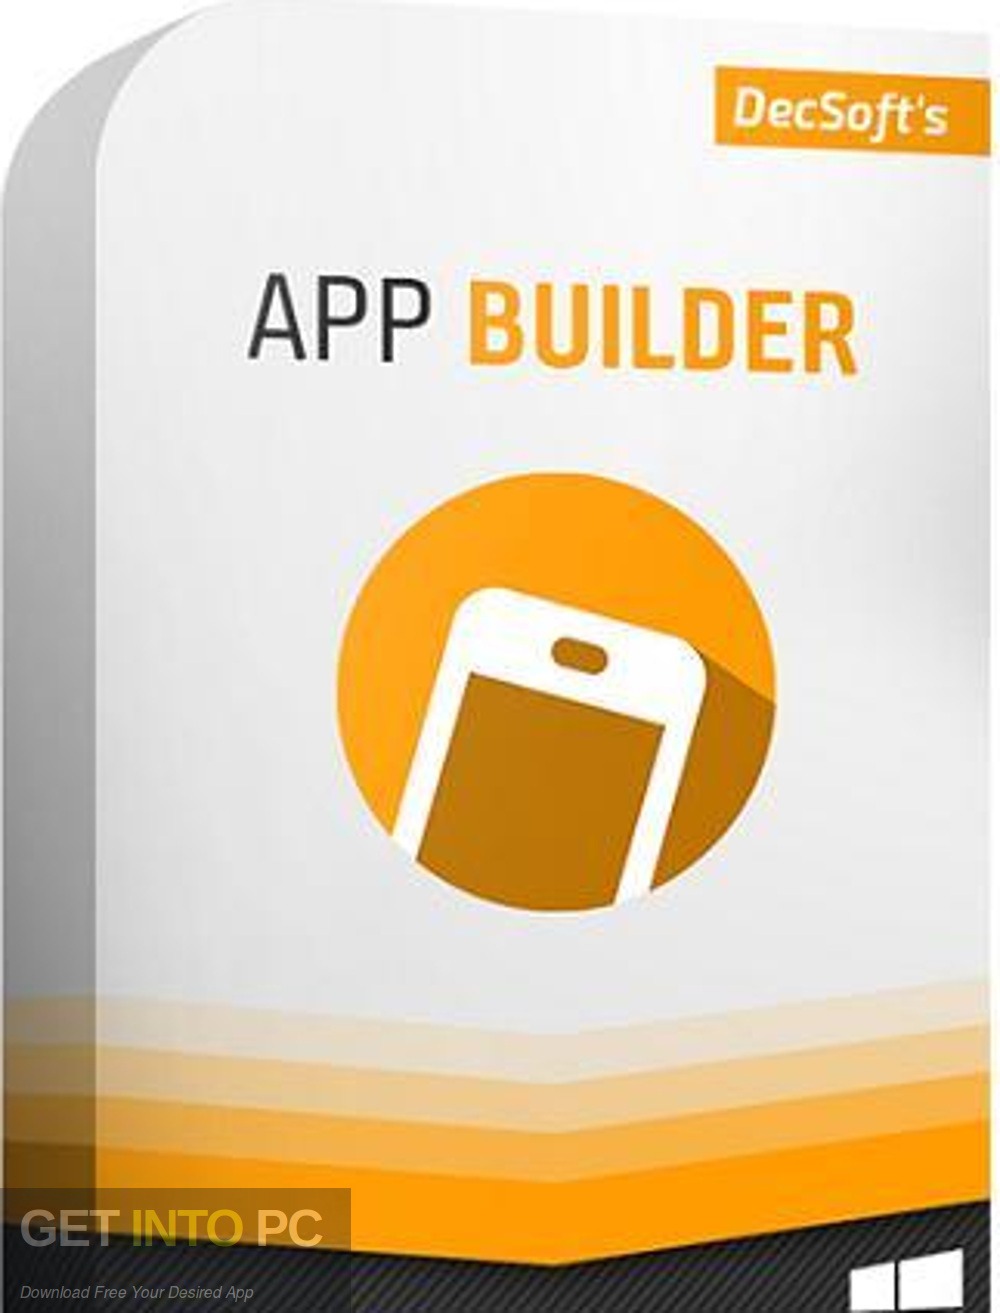 App Builder 2019 Free Download - GetintoPC.com